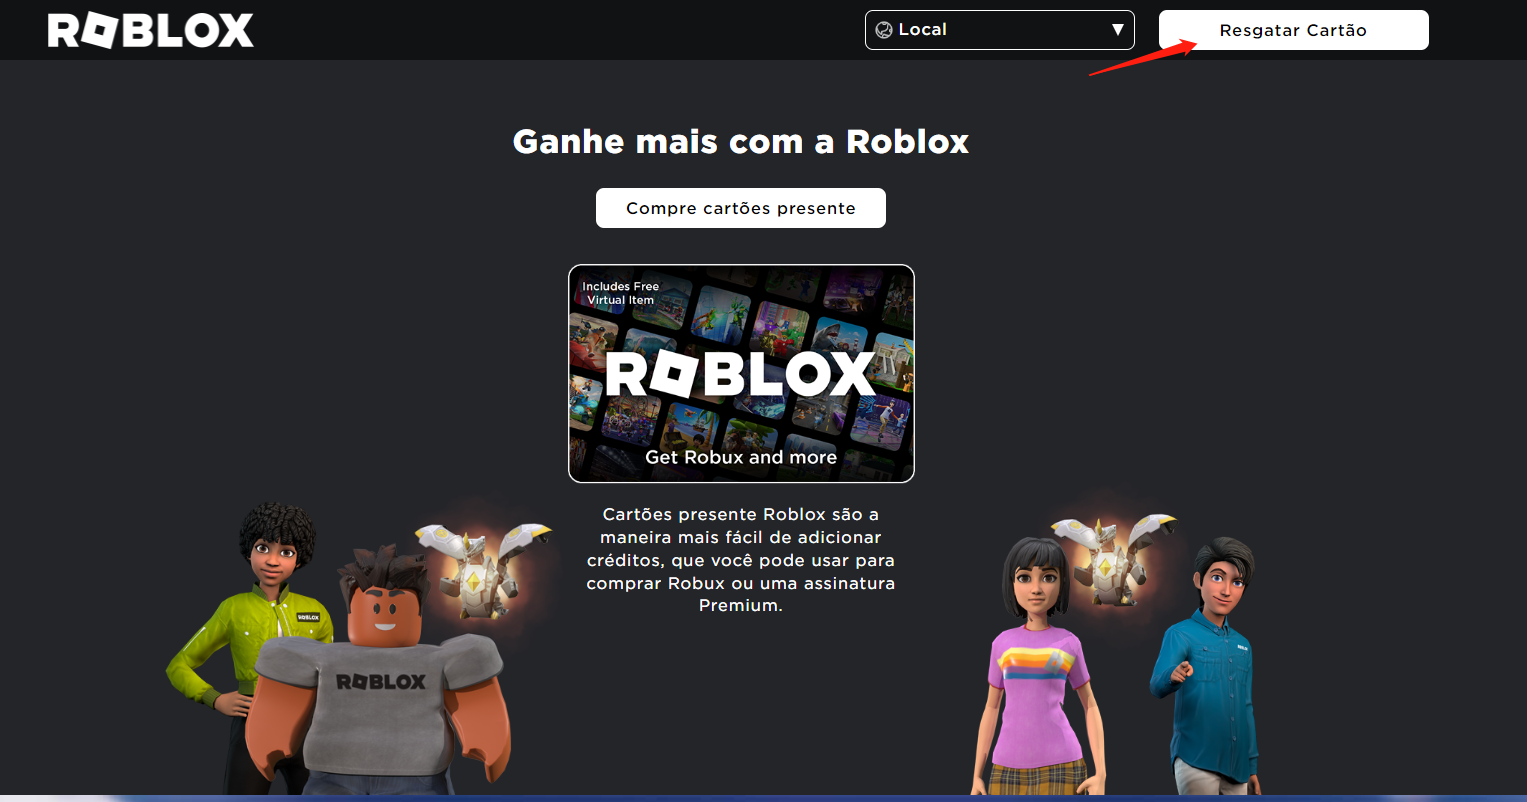 Código robux Es Resgate Personagens ROBLOX Robux Grátis RESGATAR